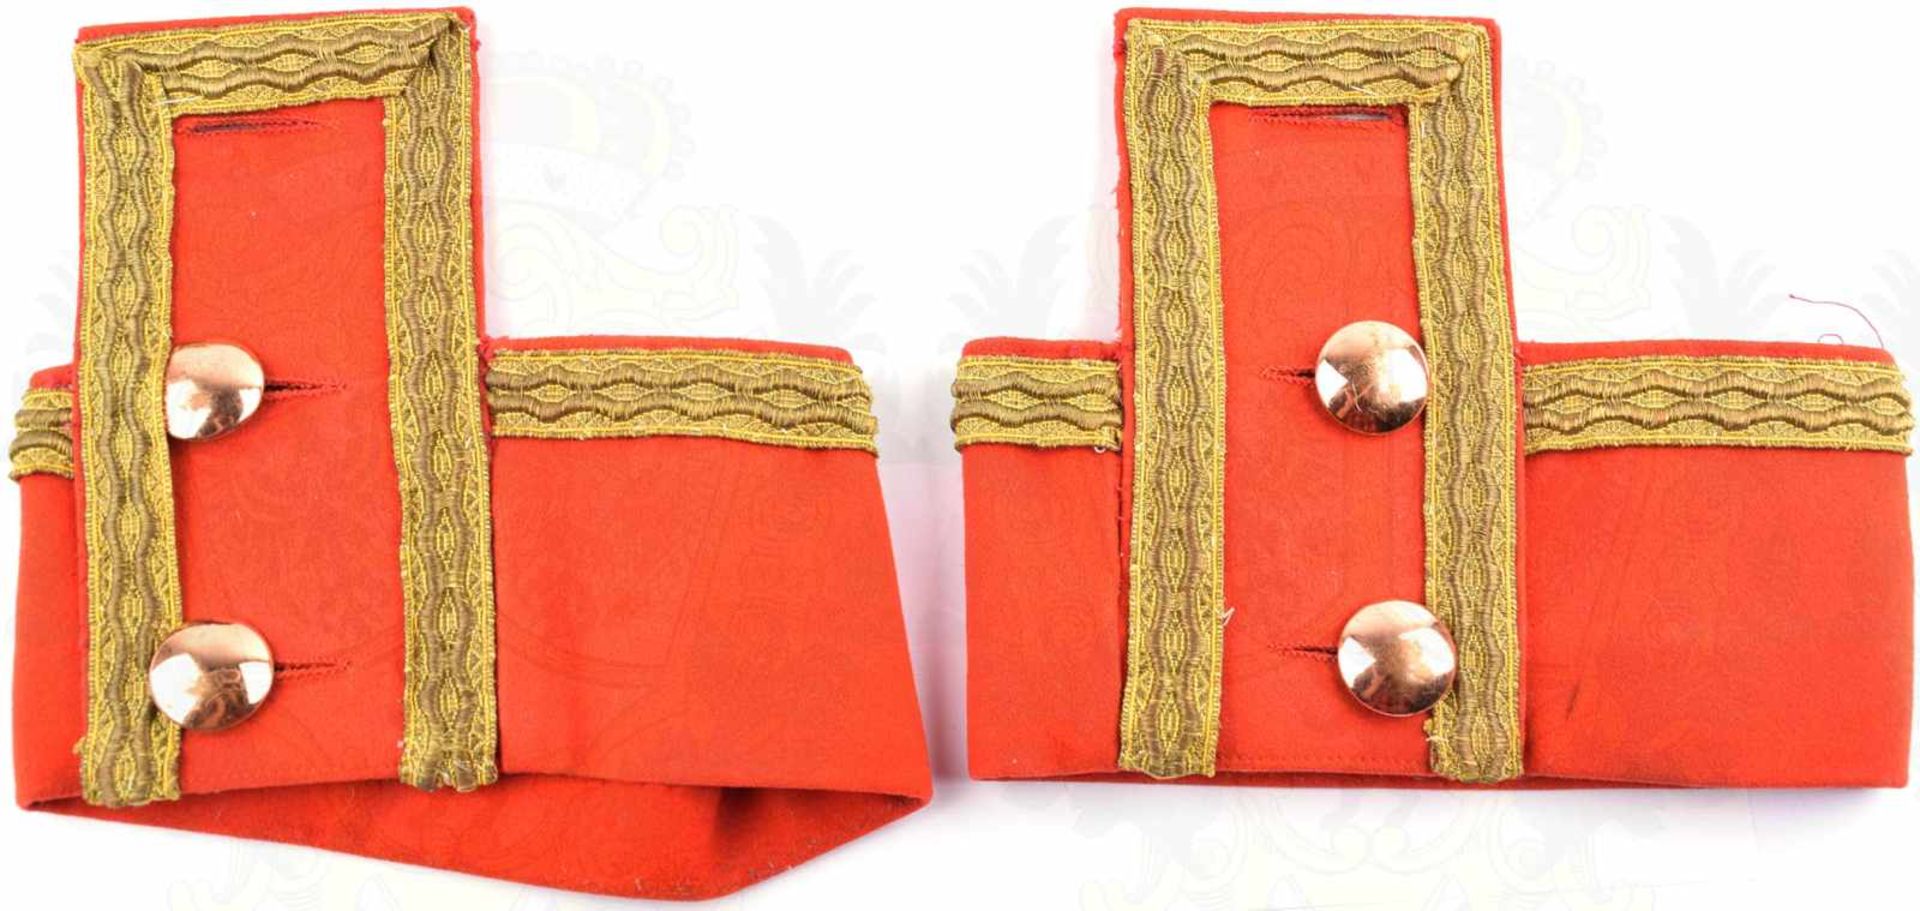 PAAR BRANDENBURGISCHE ÄRMELAUFSCHLÄGE, Schneideranfertigung im Stil um 1900, rotes Tuch, goldfarbene